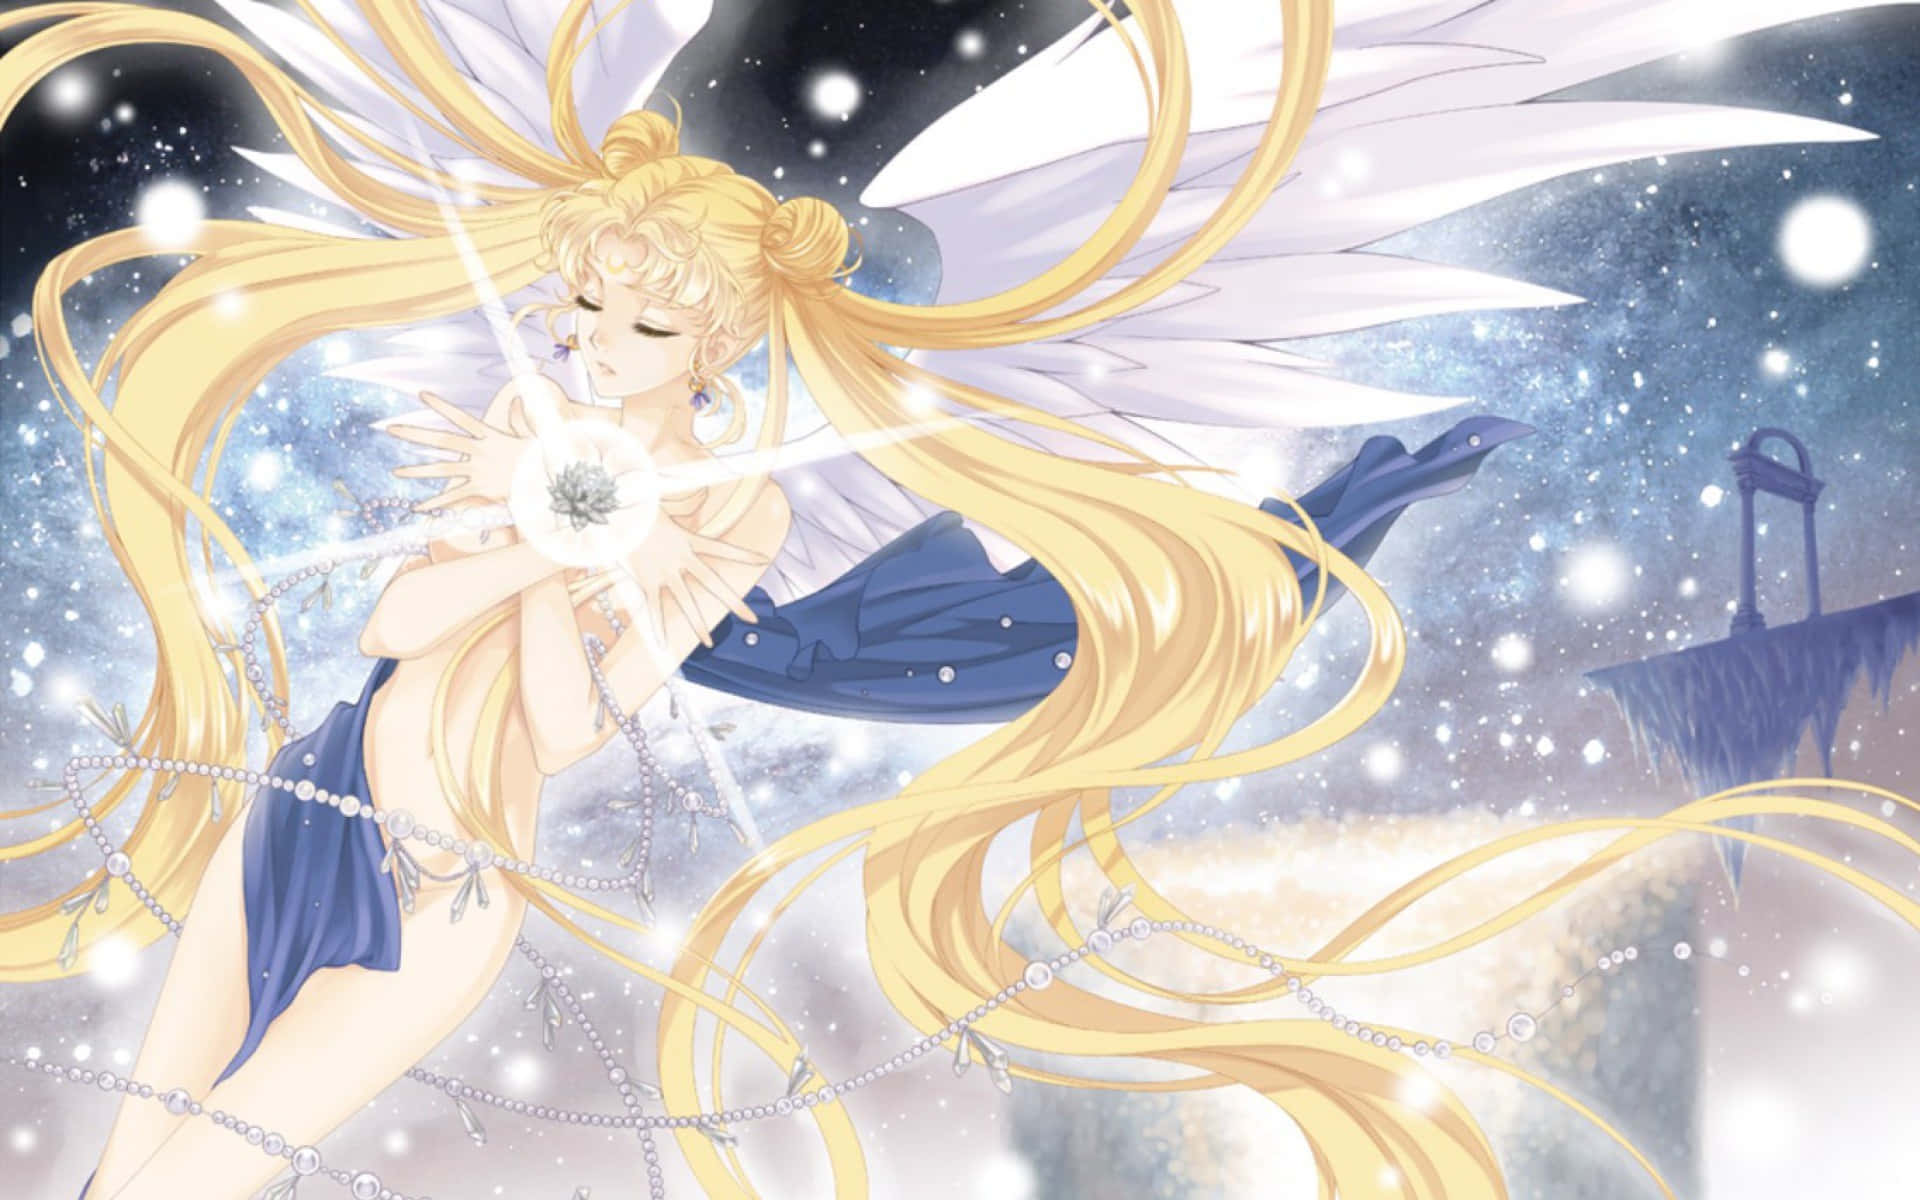 Engrupp Modiga Hjältinnor I Sailor Moon Crystal. Wallpaper